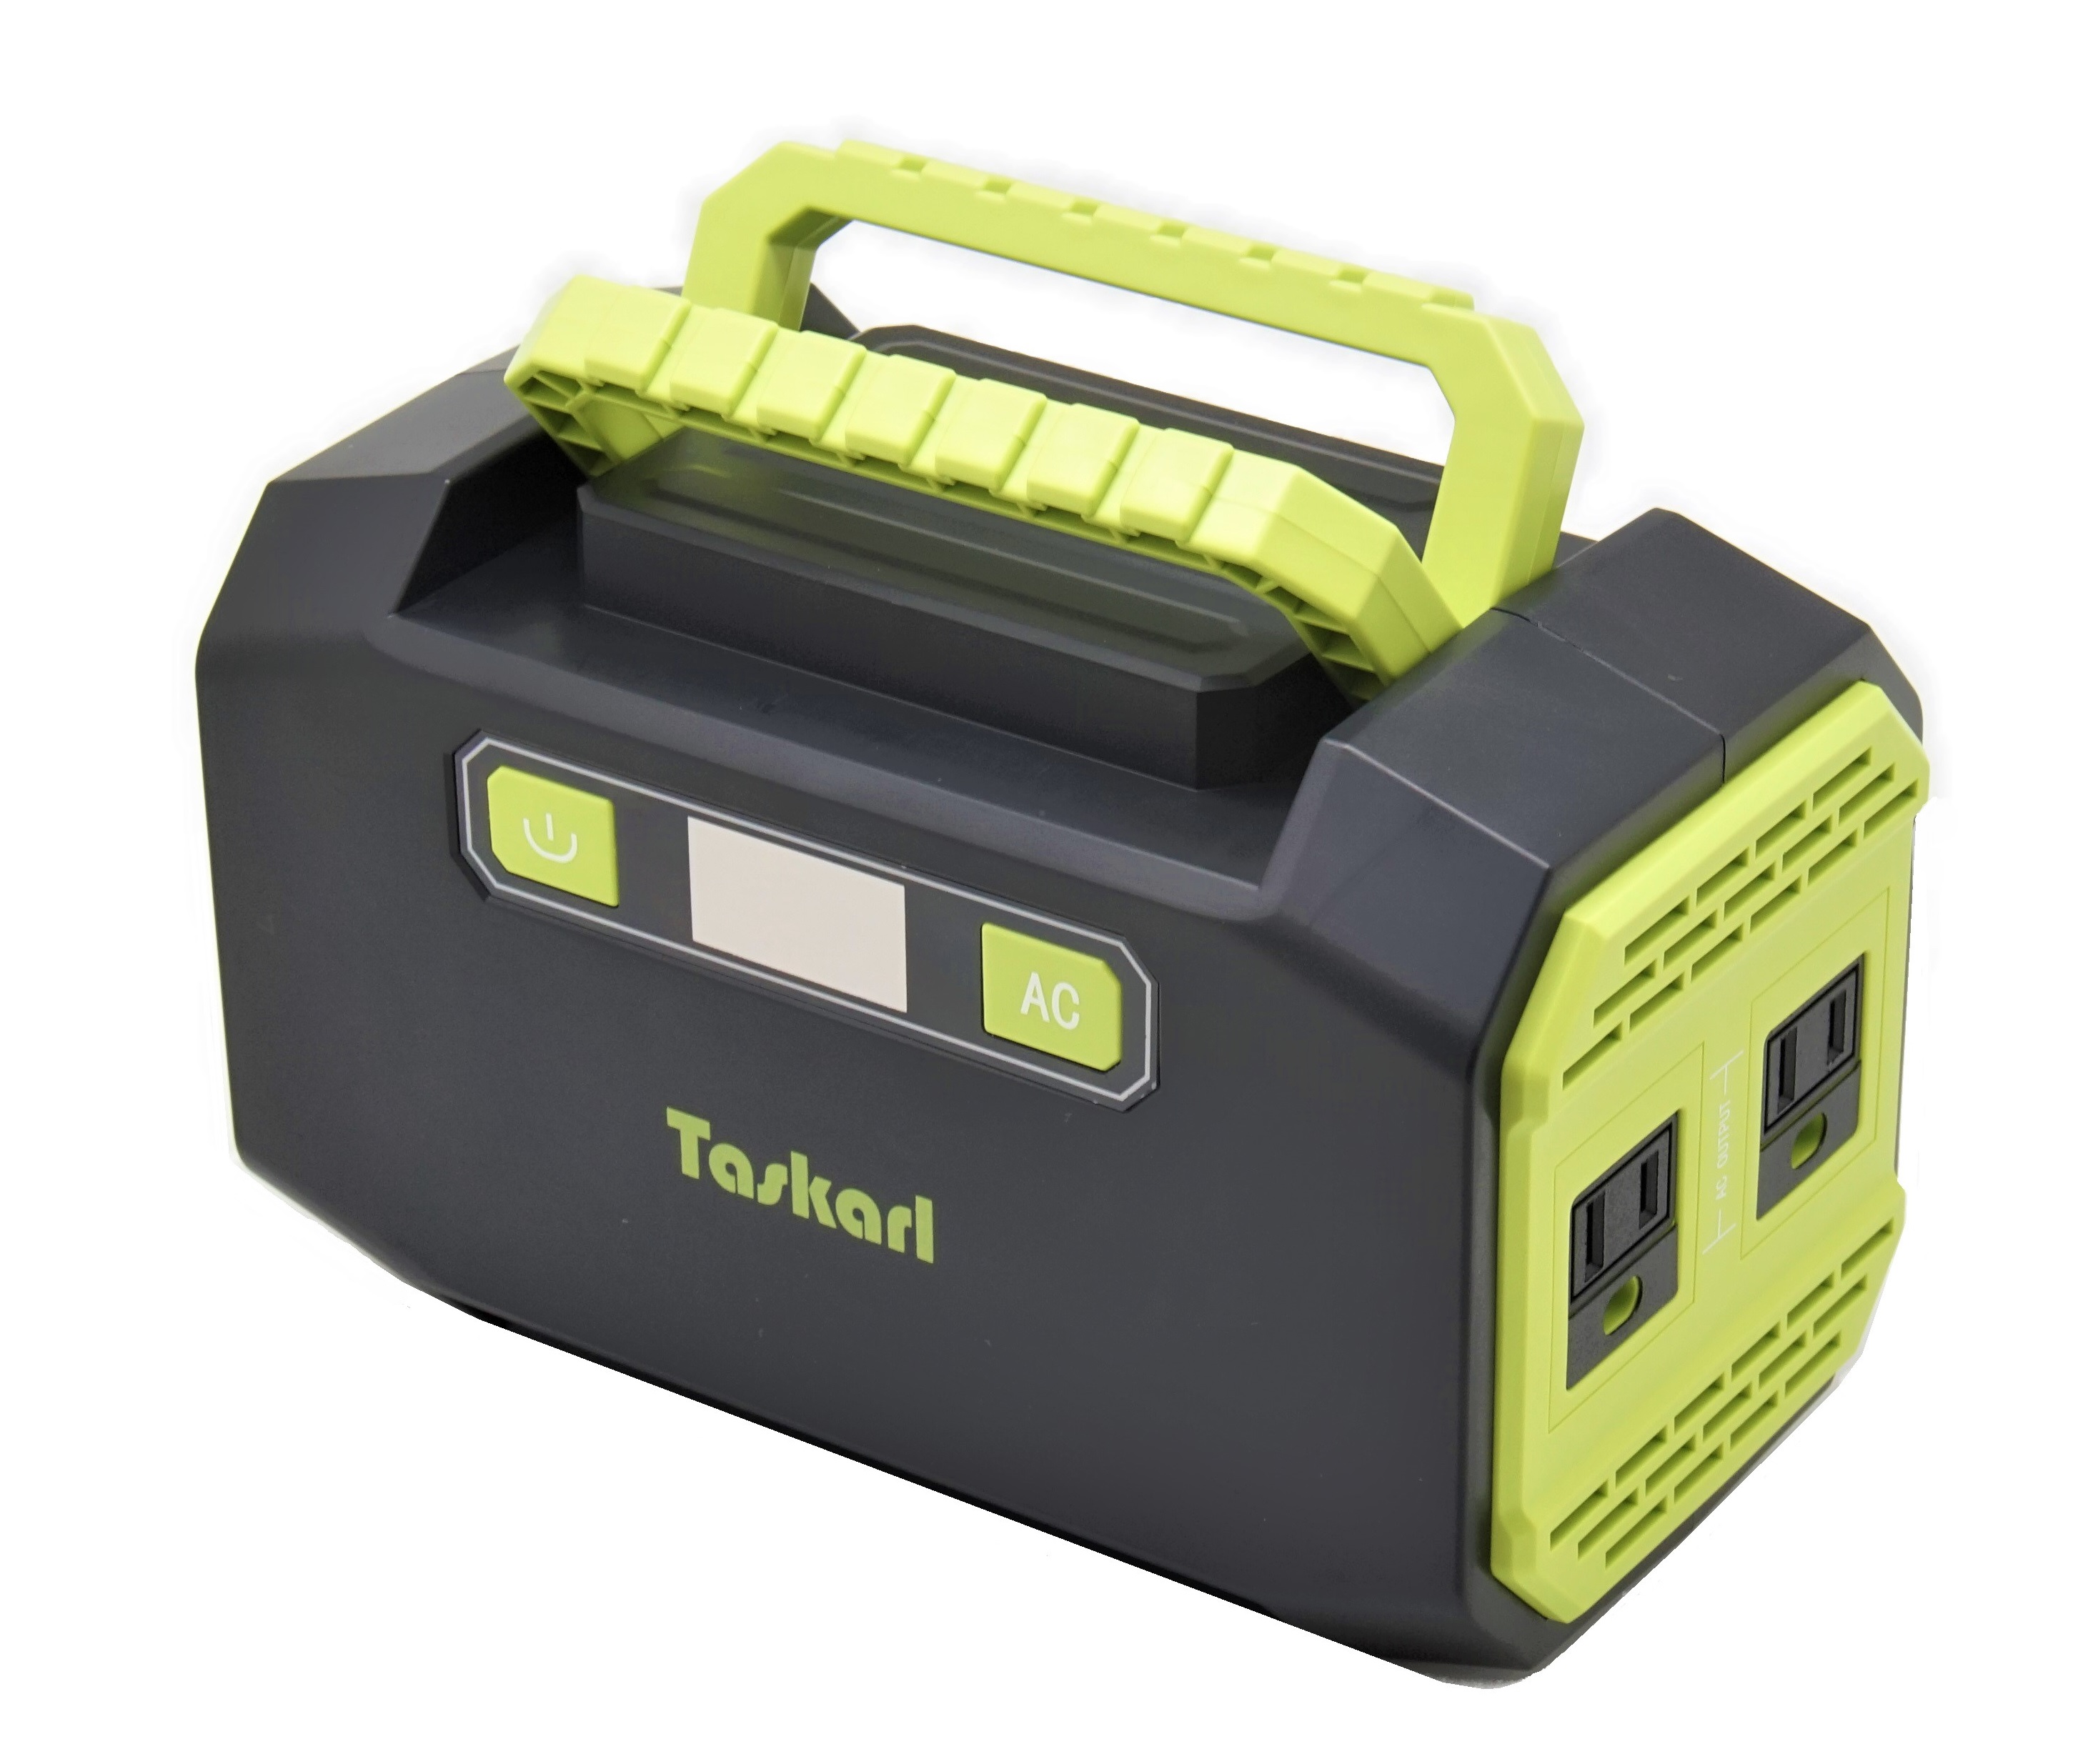 Taskarl 大容量ポータブル電源 | 取扱い商品 | 新東京物産株式会社